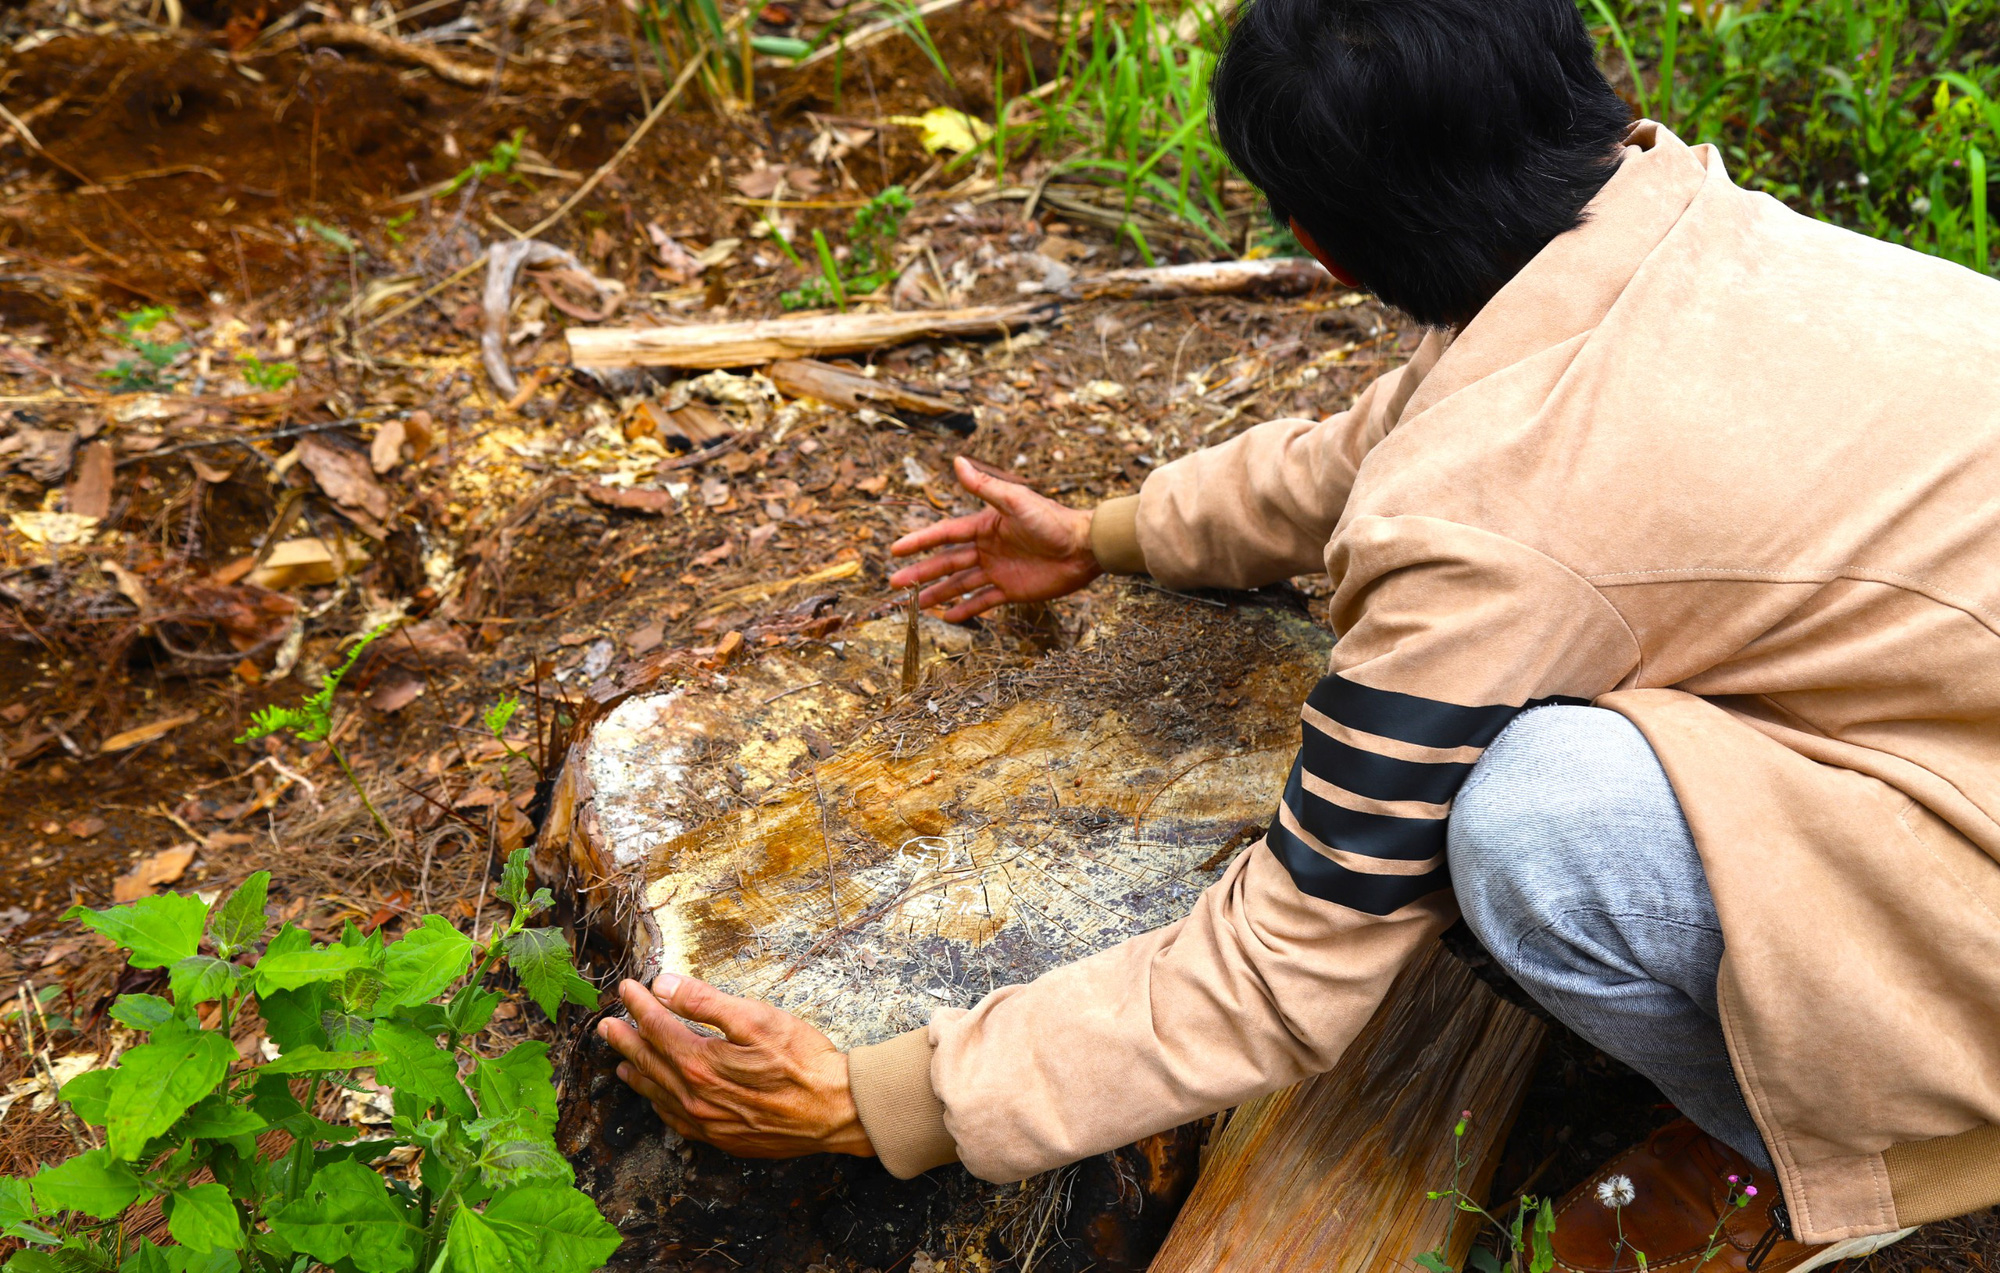 Vụ phá 1,9ha rừng ở Bảo Lâm: Tạm đình chỉ công tác Chủ tịch xã Lộc Phú 15 ngày - Ảnh 4.